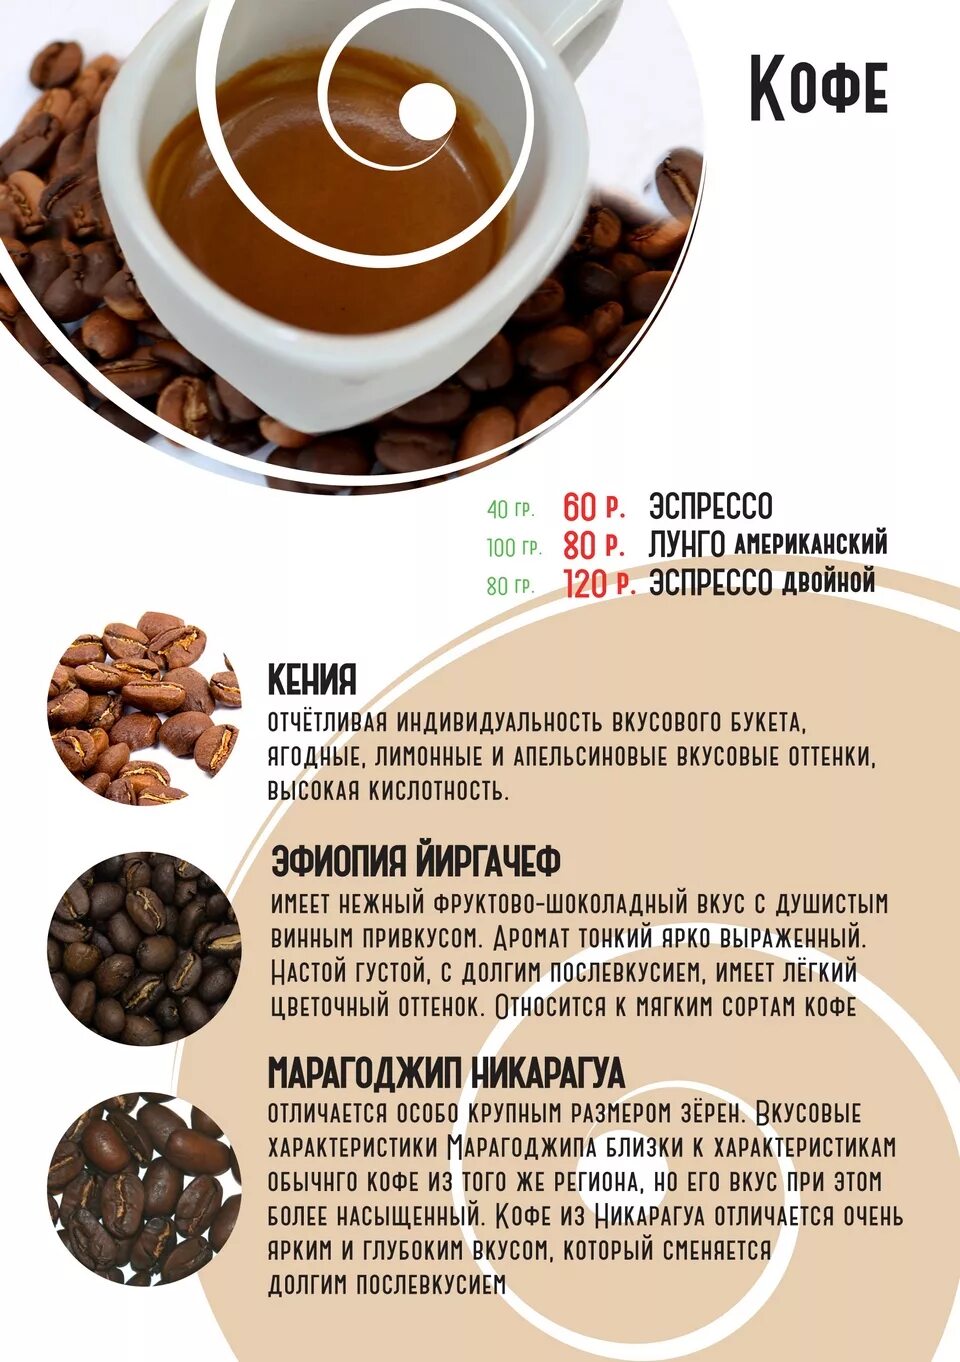 Популярные напитки из кофе. Карта напитков кофе. Рецепты кофе. Грамм кофе на эспрессо. Соотношение кофе и воды